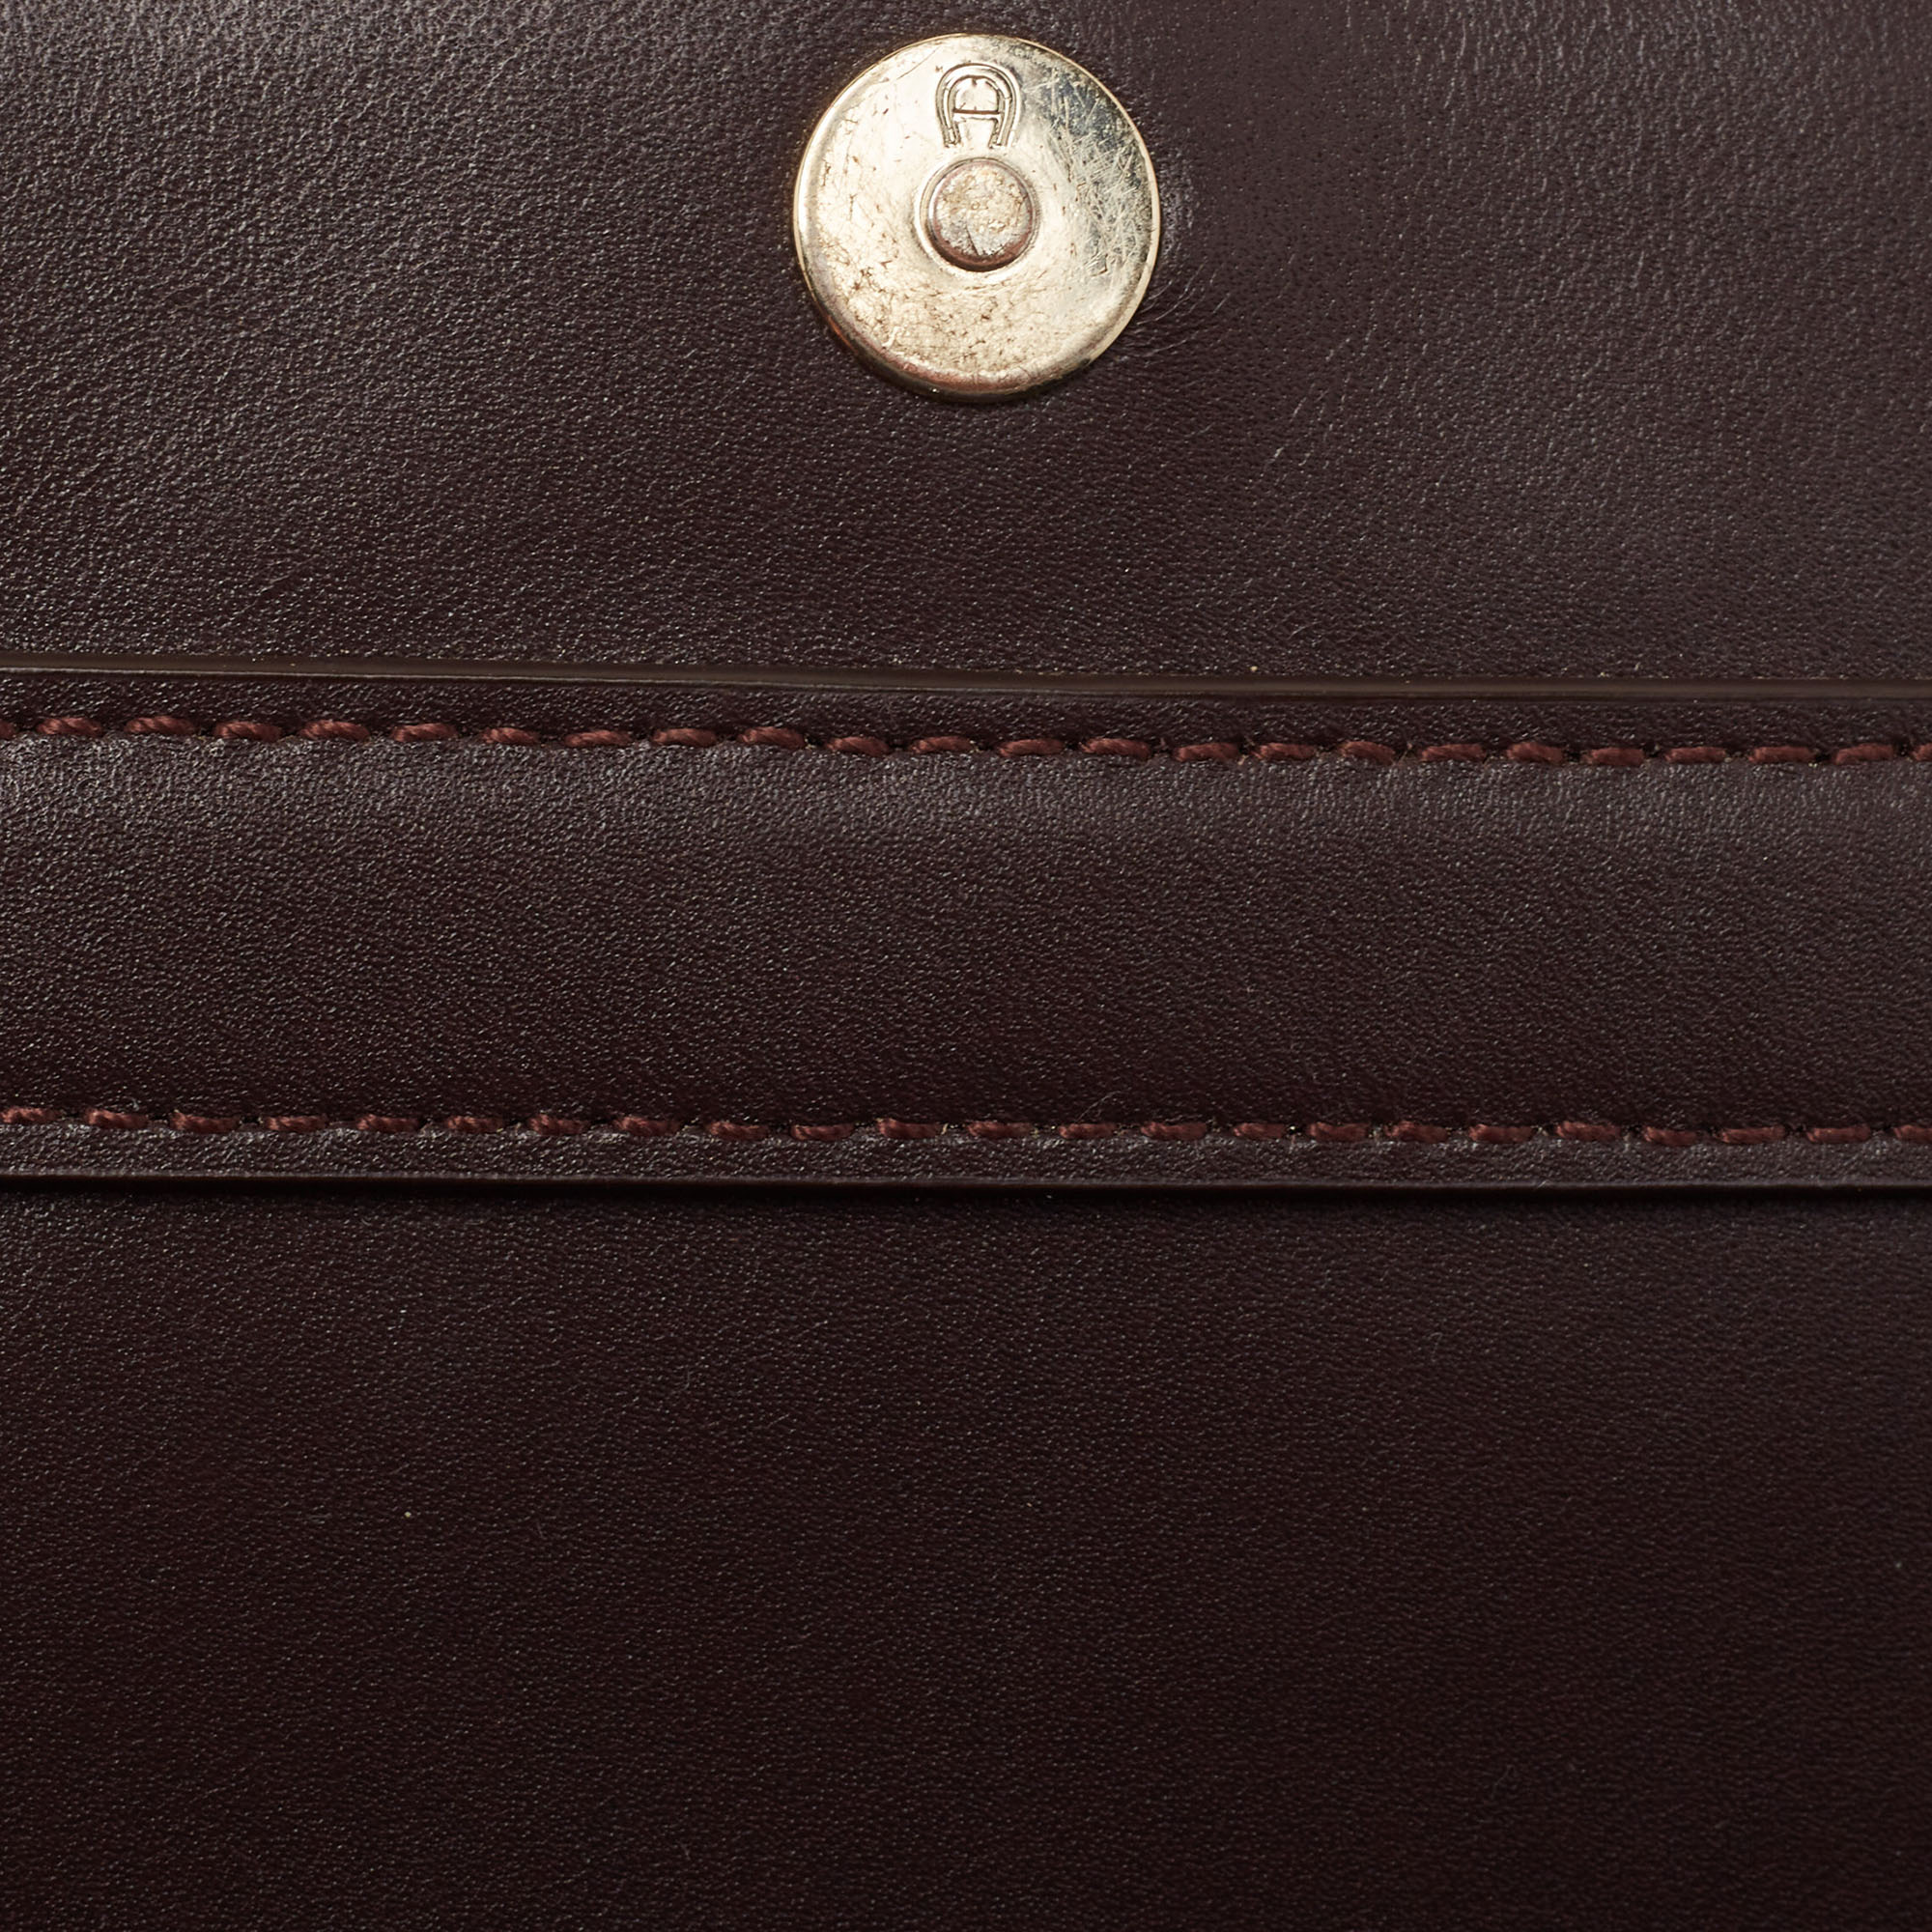 Aigner Burgundy Leather Turnlock Flap Shoulder Bag